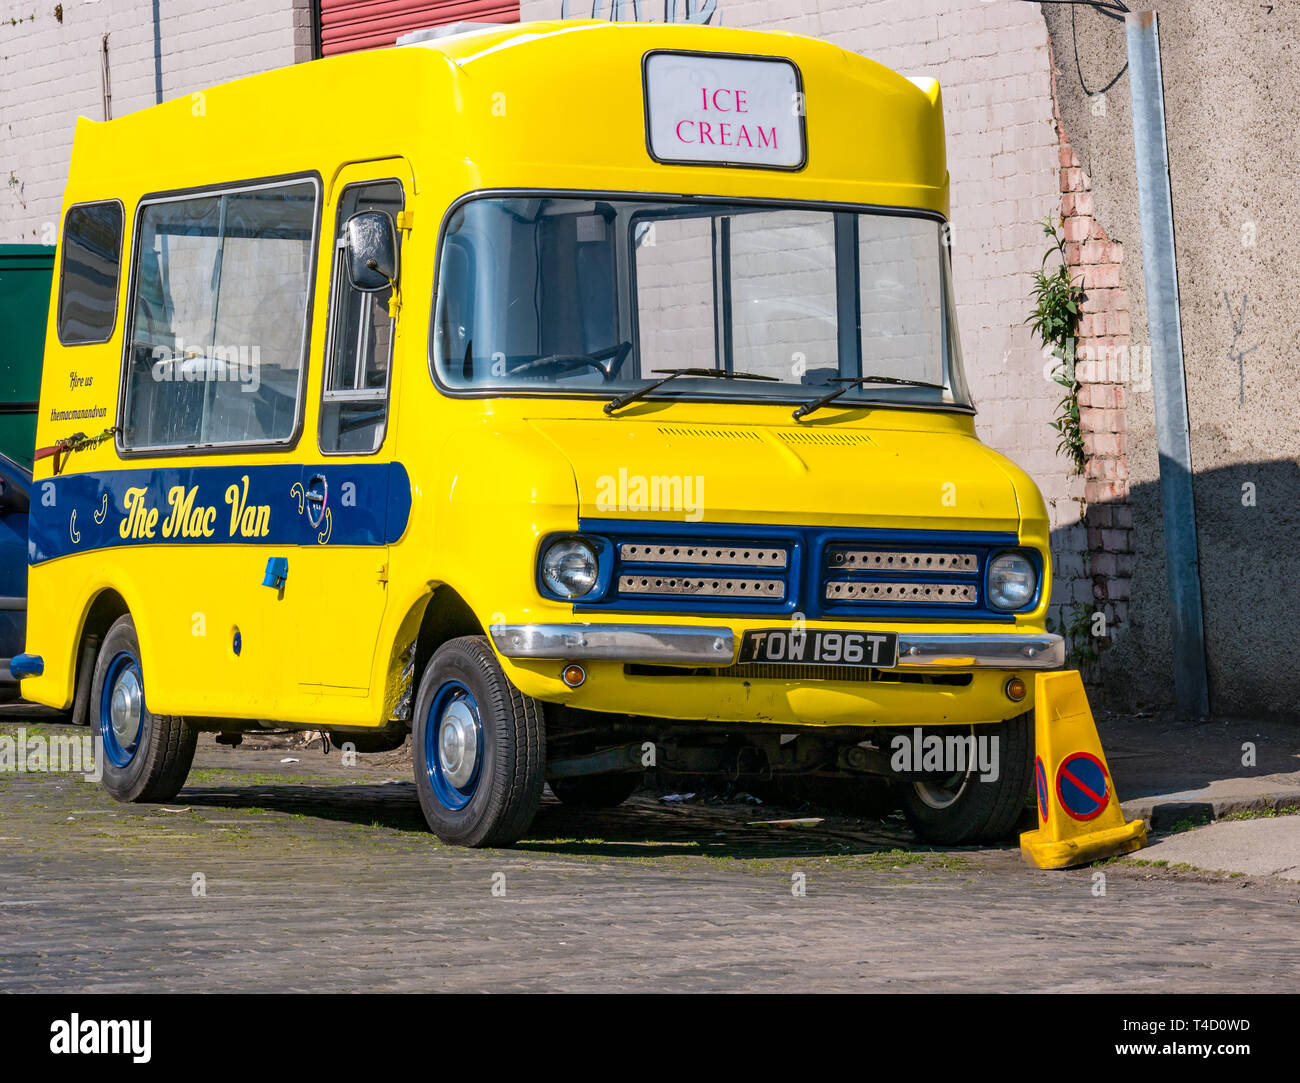 Old vintage 1979 Bedford ice cream takeaway van called The MAC van, Edinburgh, Scotland, UK Stock Photo